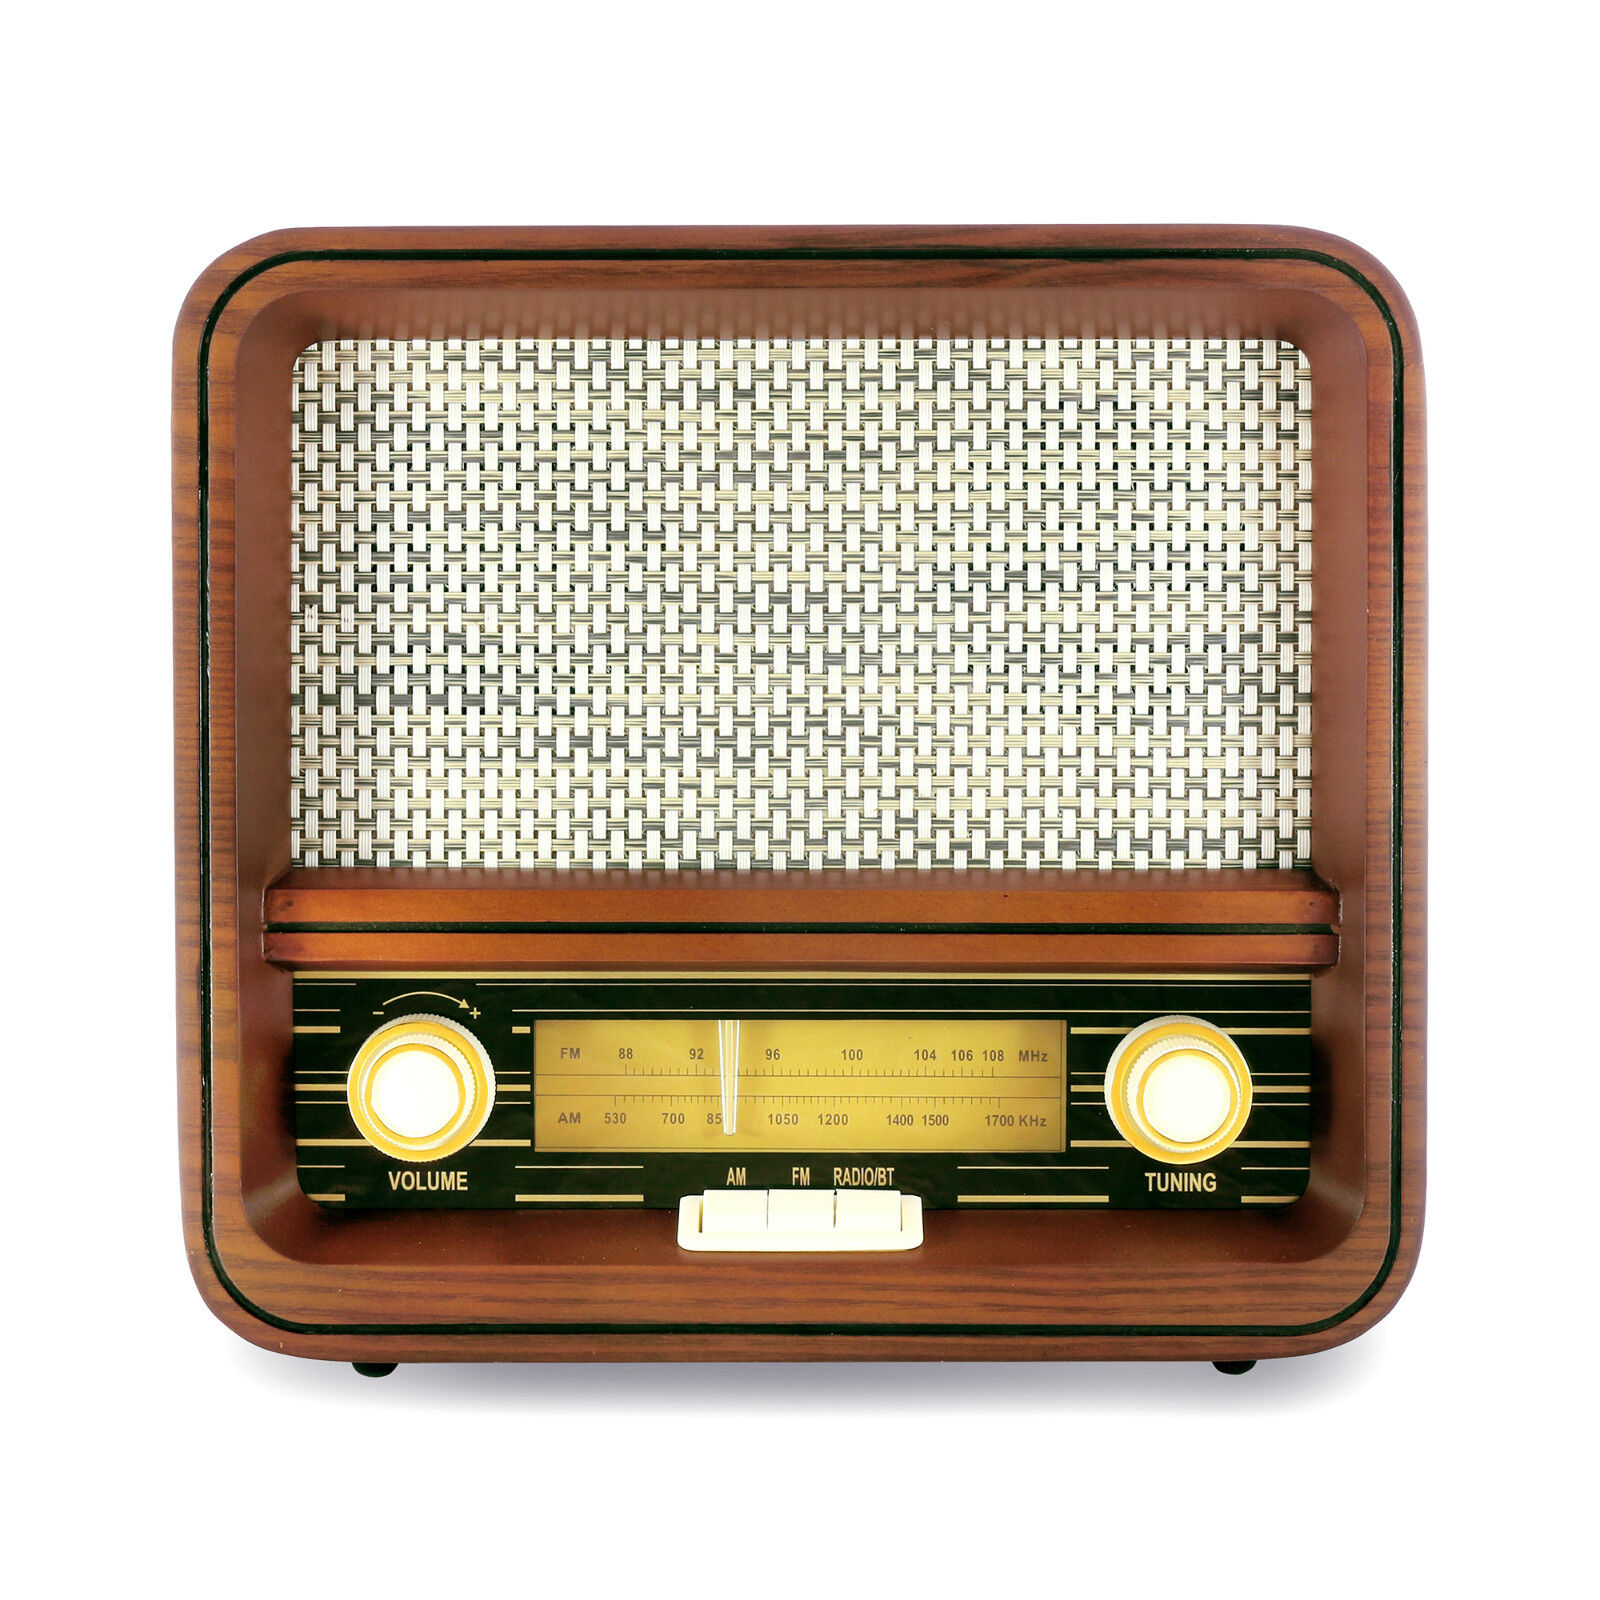 Fuse Real Wood Exterior Vintage Retro Bluetooth, AM/FM Radio, Speaker